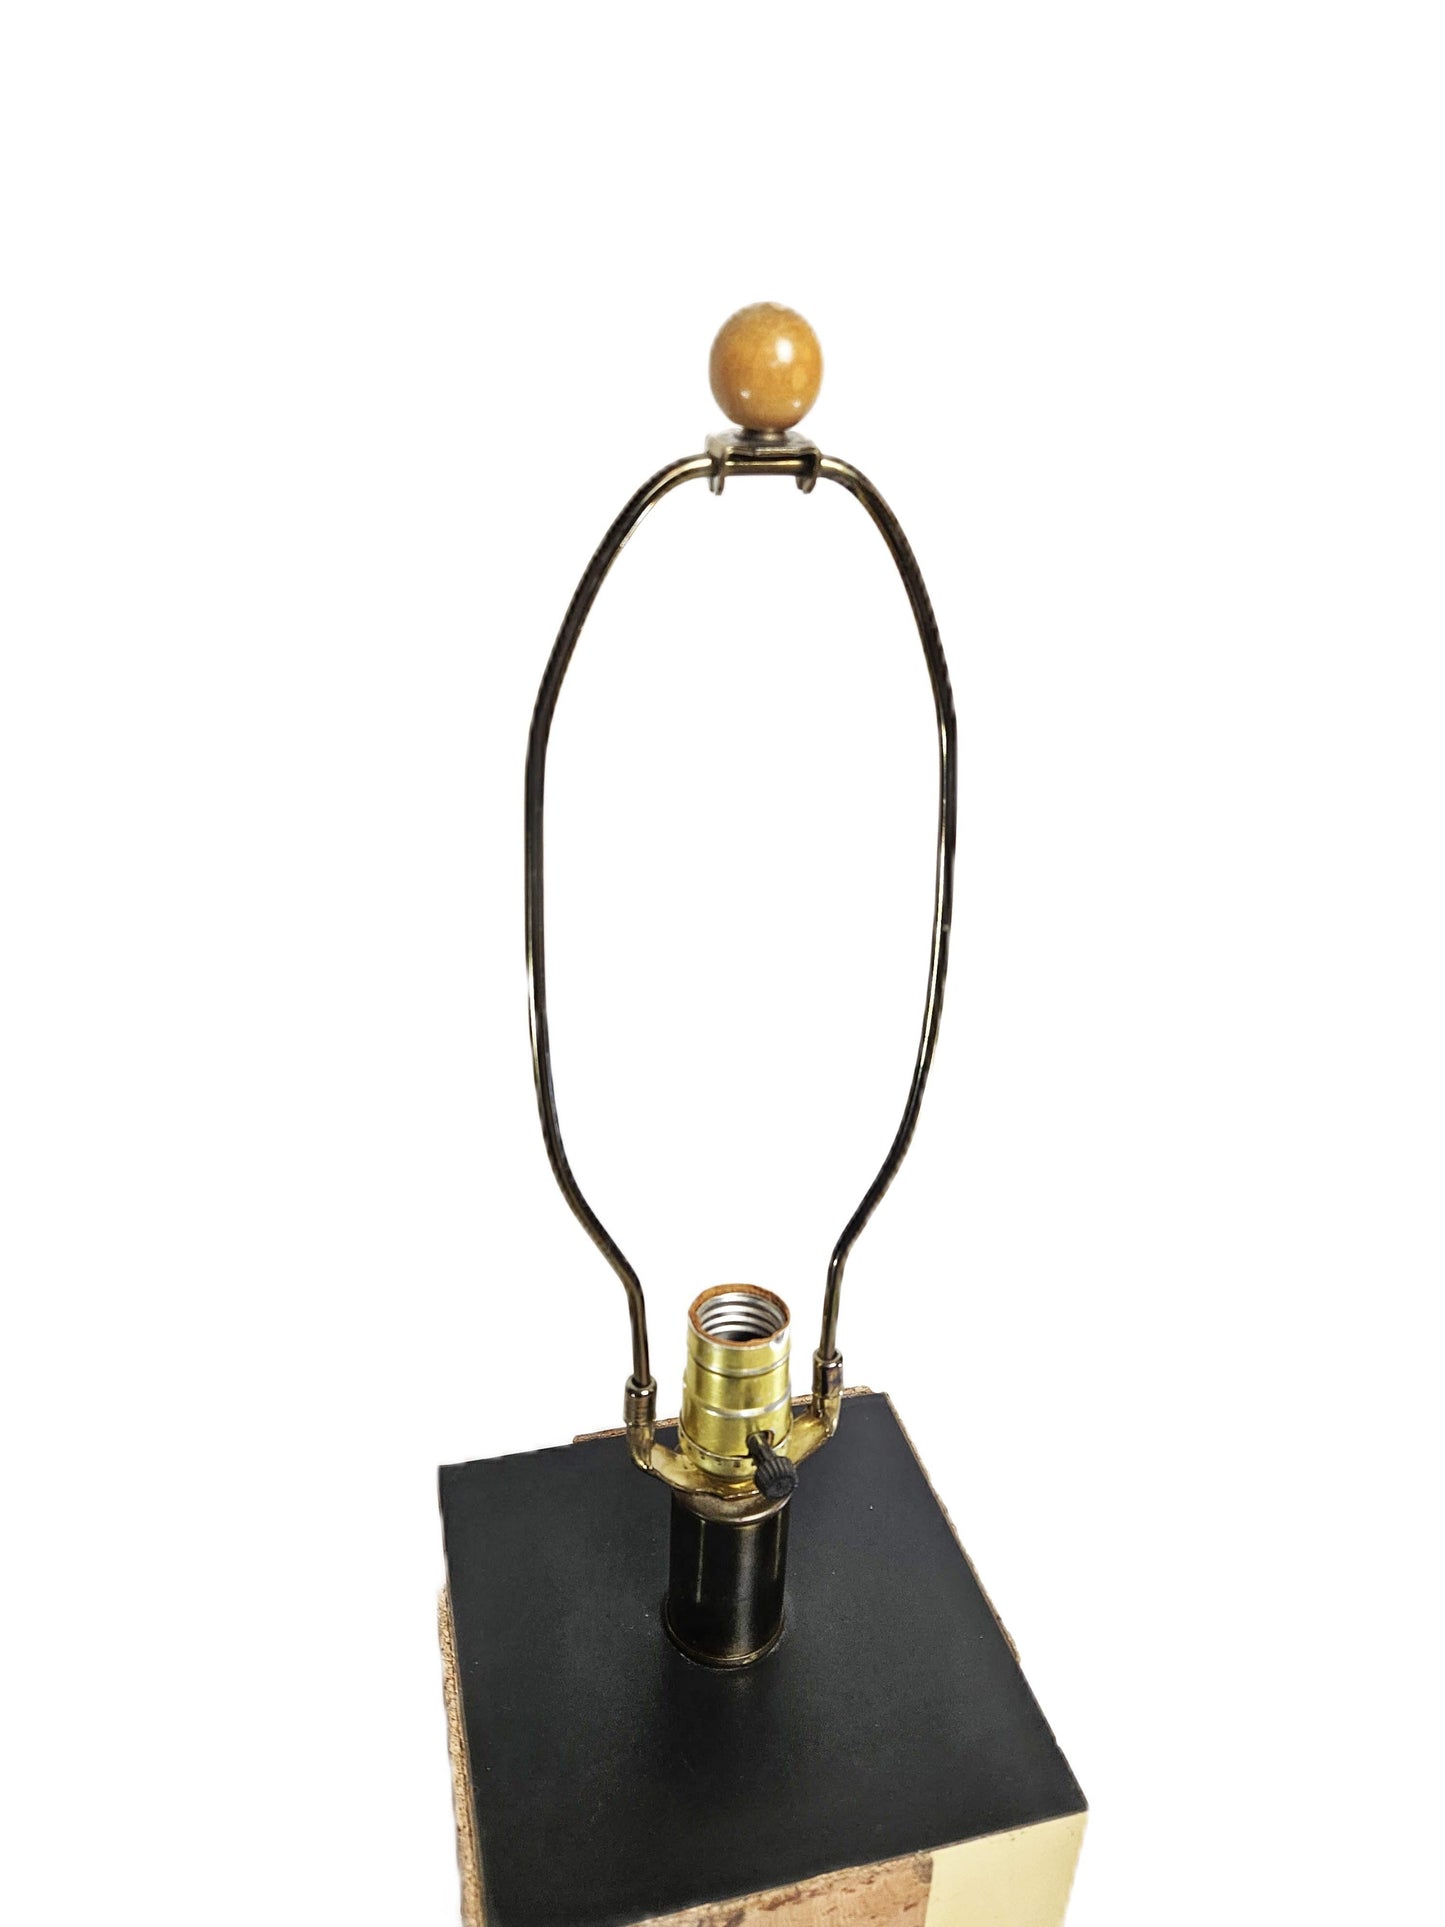 Paul Evans Lighting Designer Paul Evans Cityscape Brass & Burled Cork Table Lamp Circa 1970's